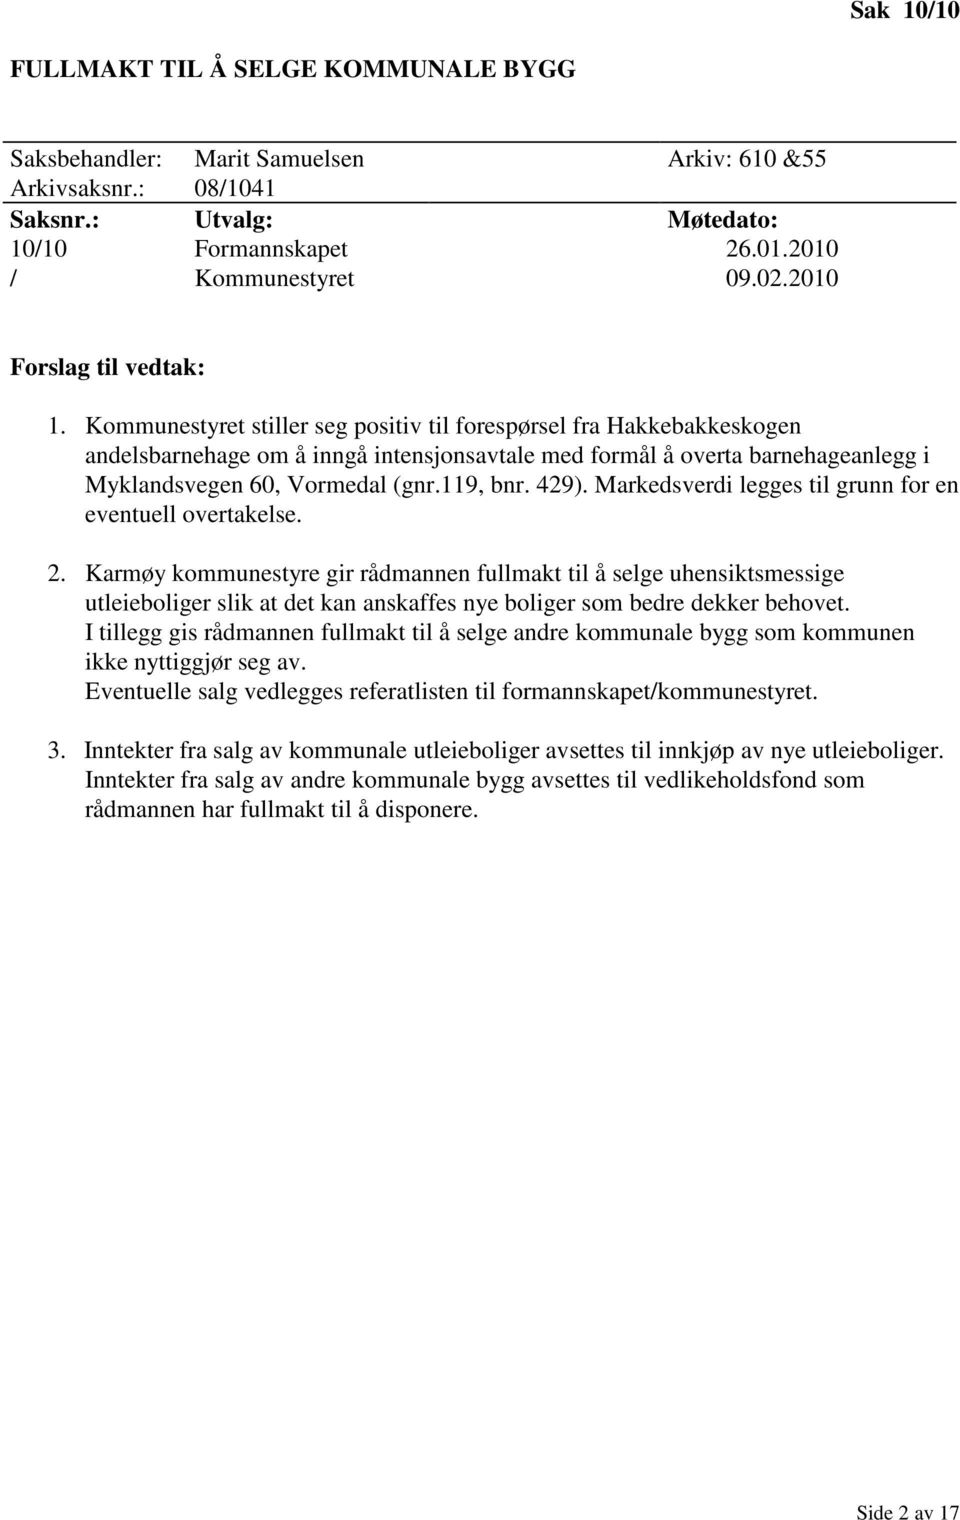 Kommunestyret stiller seg positiv til forespørsel fra Hakkebakkeskogen andelsbarnehage om å inngå intensjonsavtale med formål å overta barnehageanlegg i Myklandsvegen 60, Vormedal (gnr.119, bnr. 429).